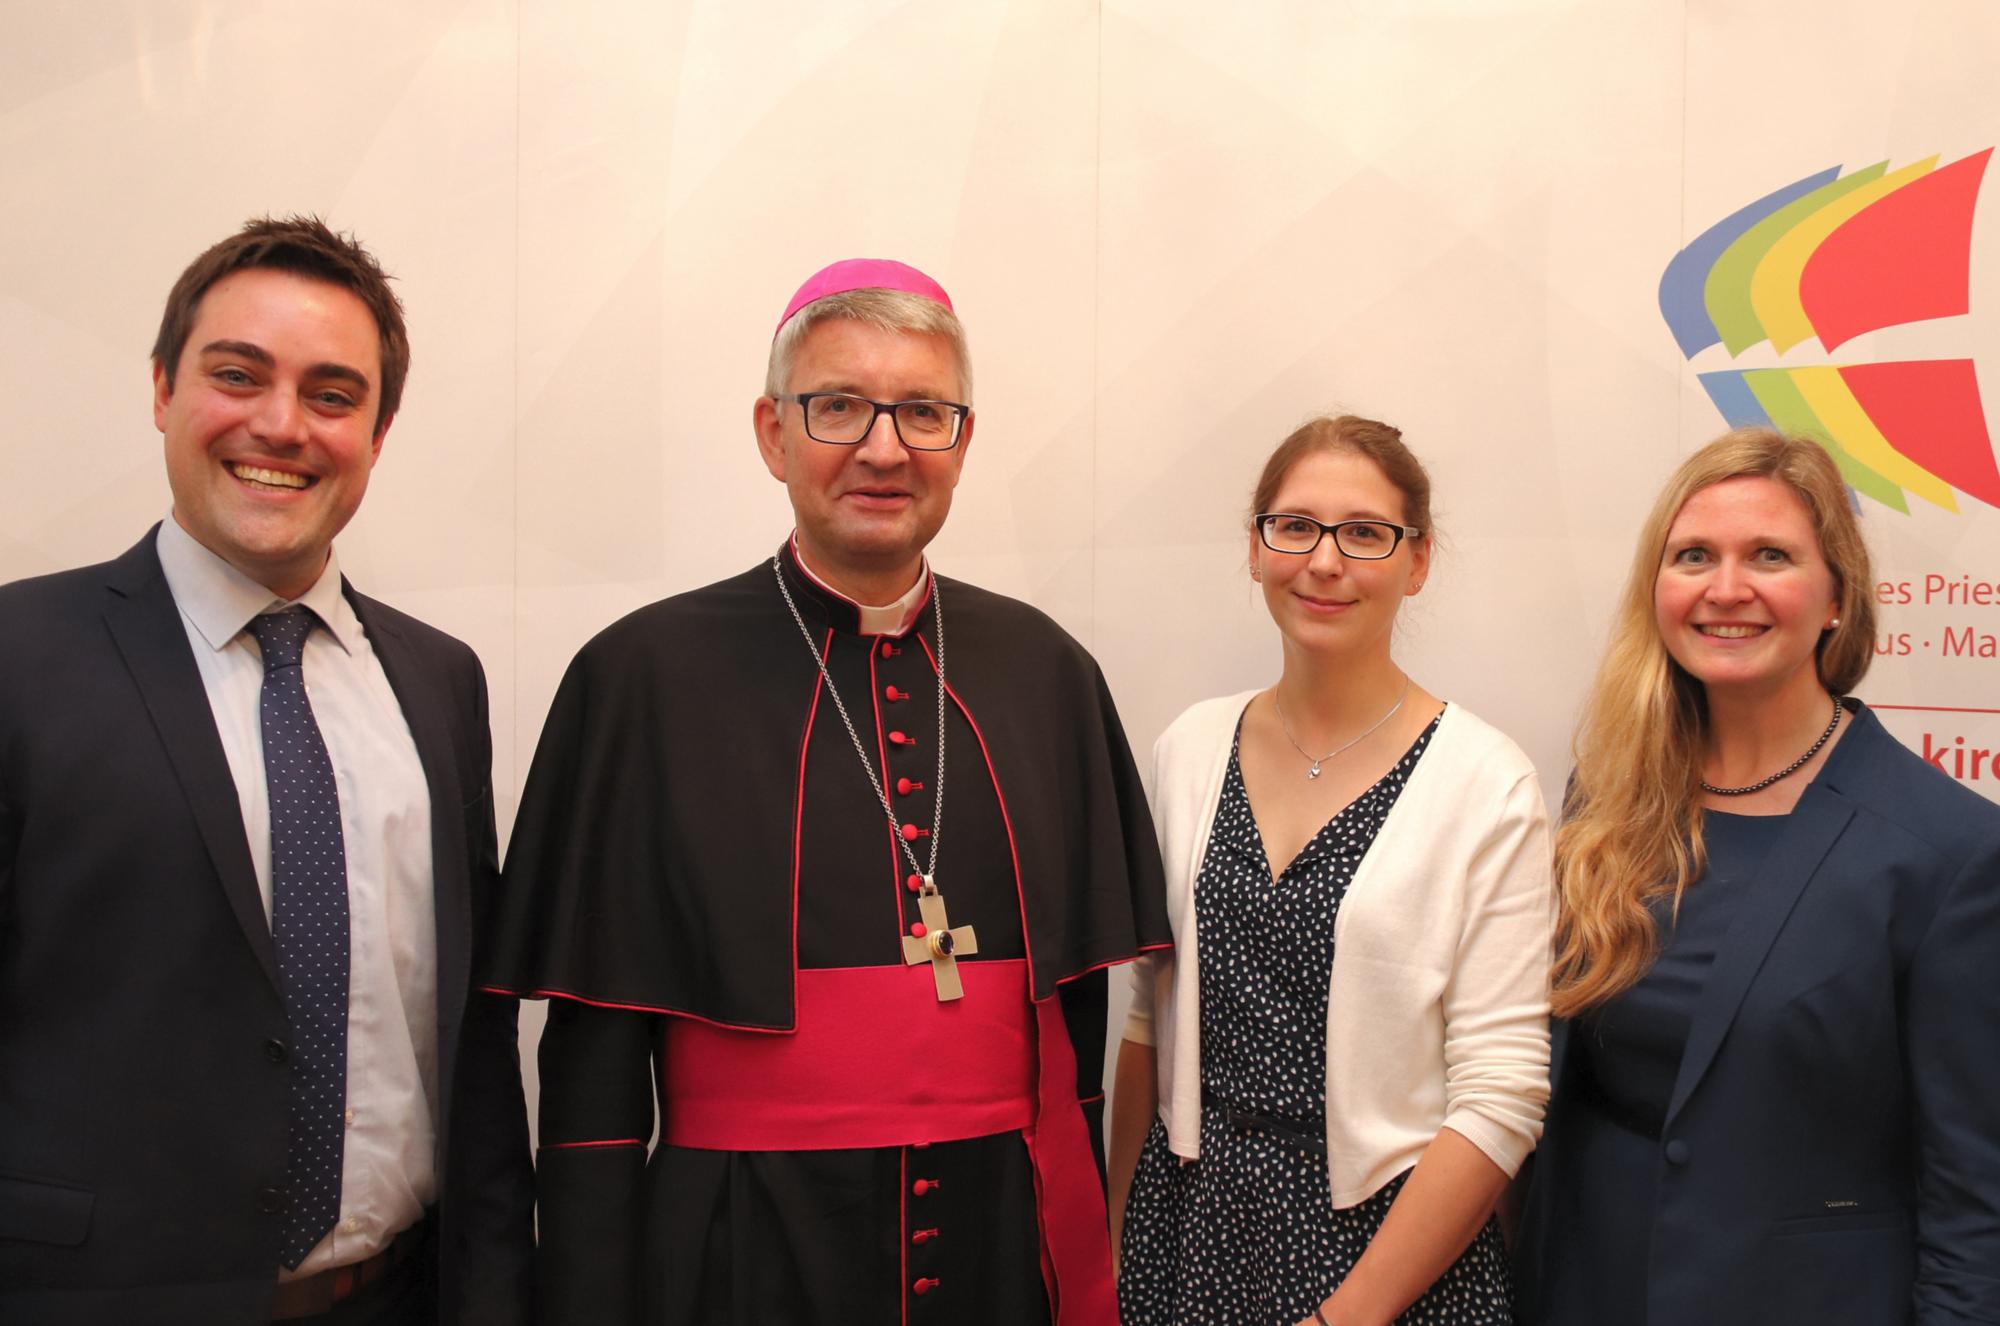 Mainz, 7.9.2019: Strahlende Gesichter: Andreas Baaden, Bischof Peter Kohlgraf, Anna-Katharina Poppe und Dr. Stefanie Priester. (c) Bistum Mainz / Matschak